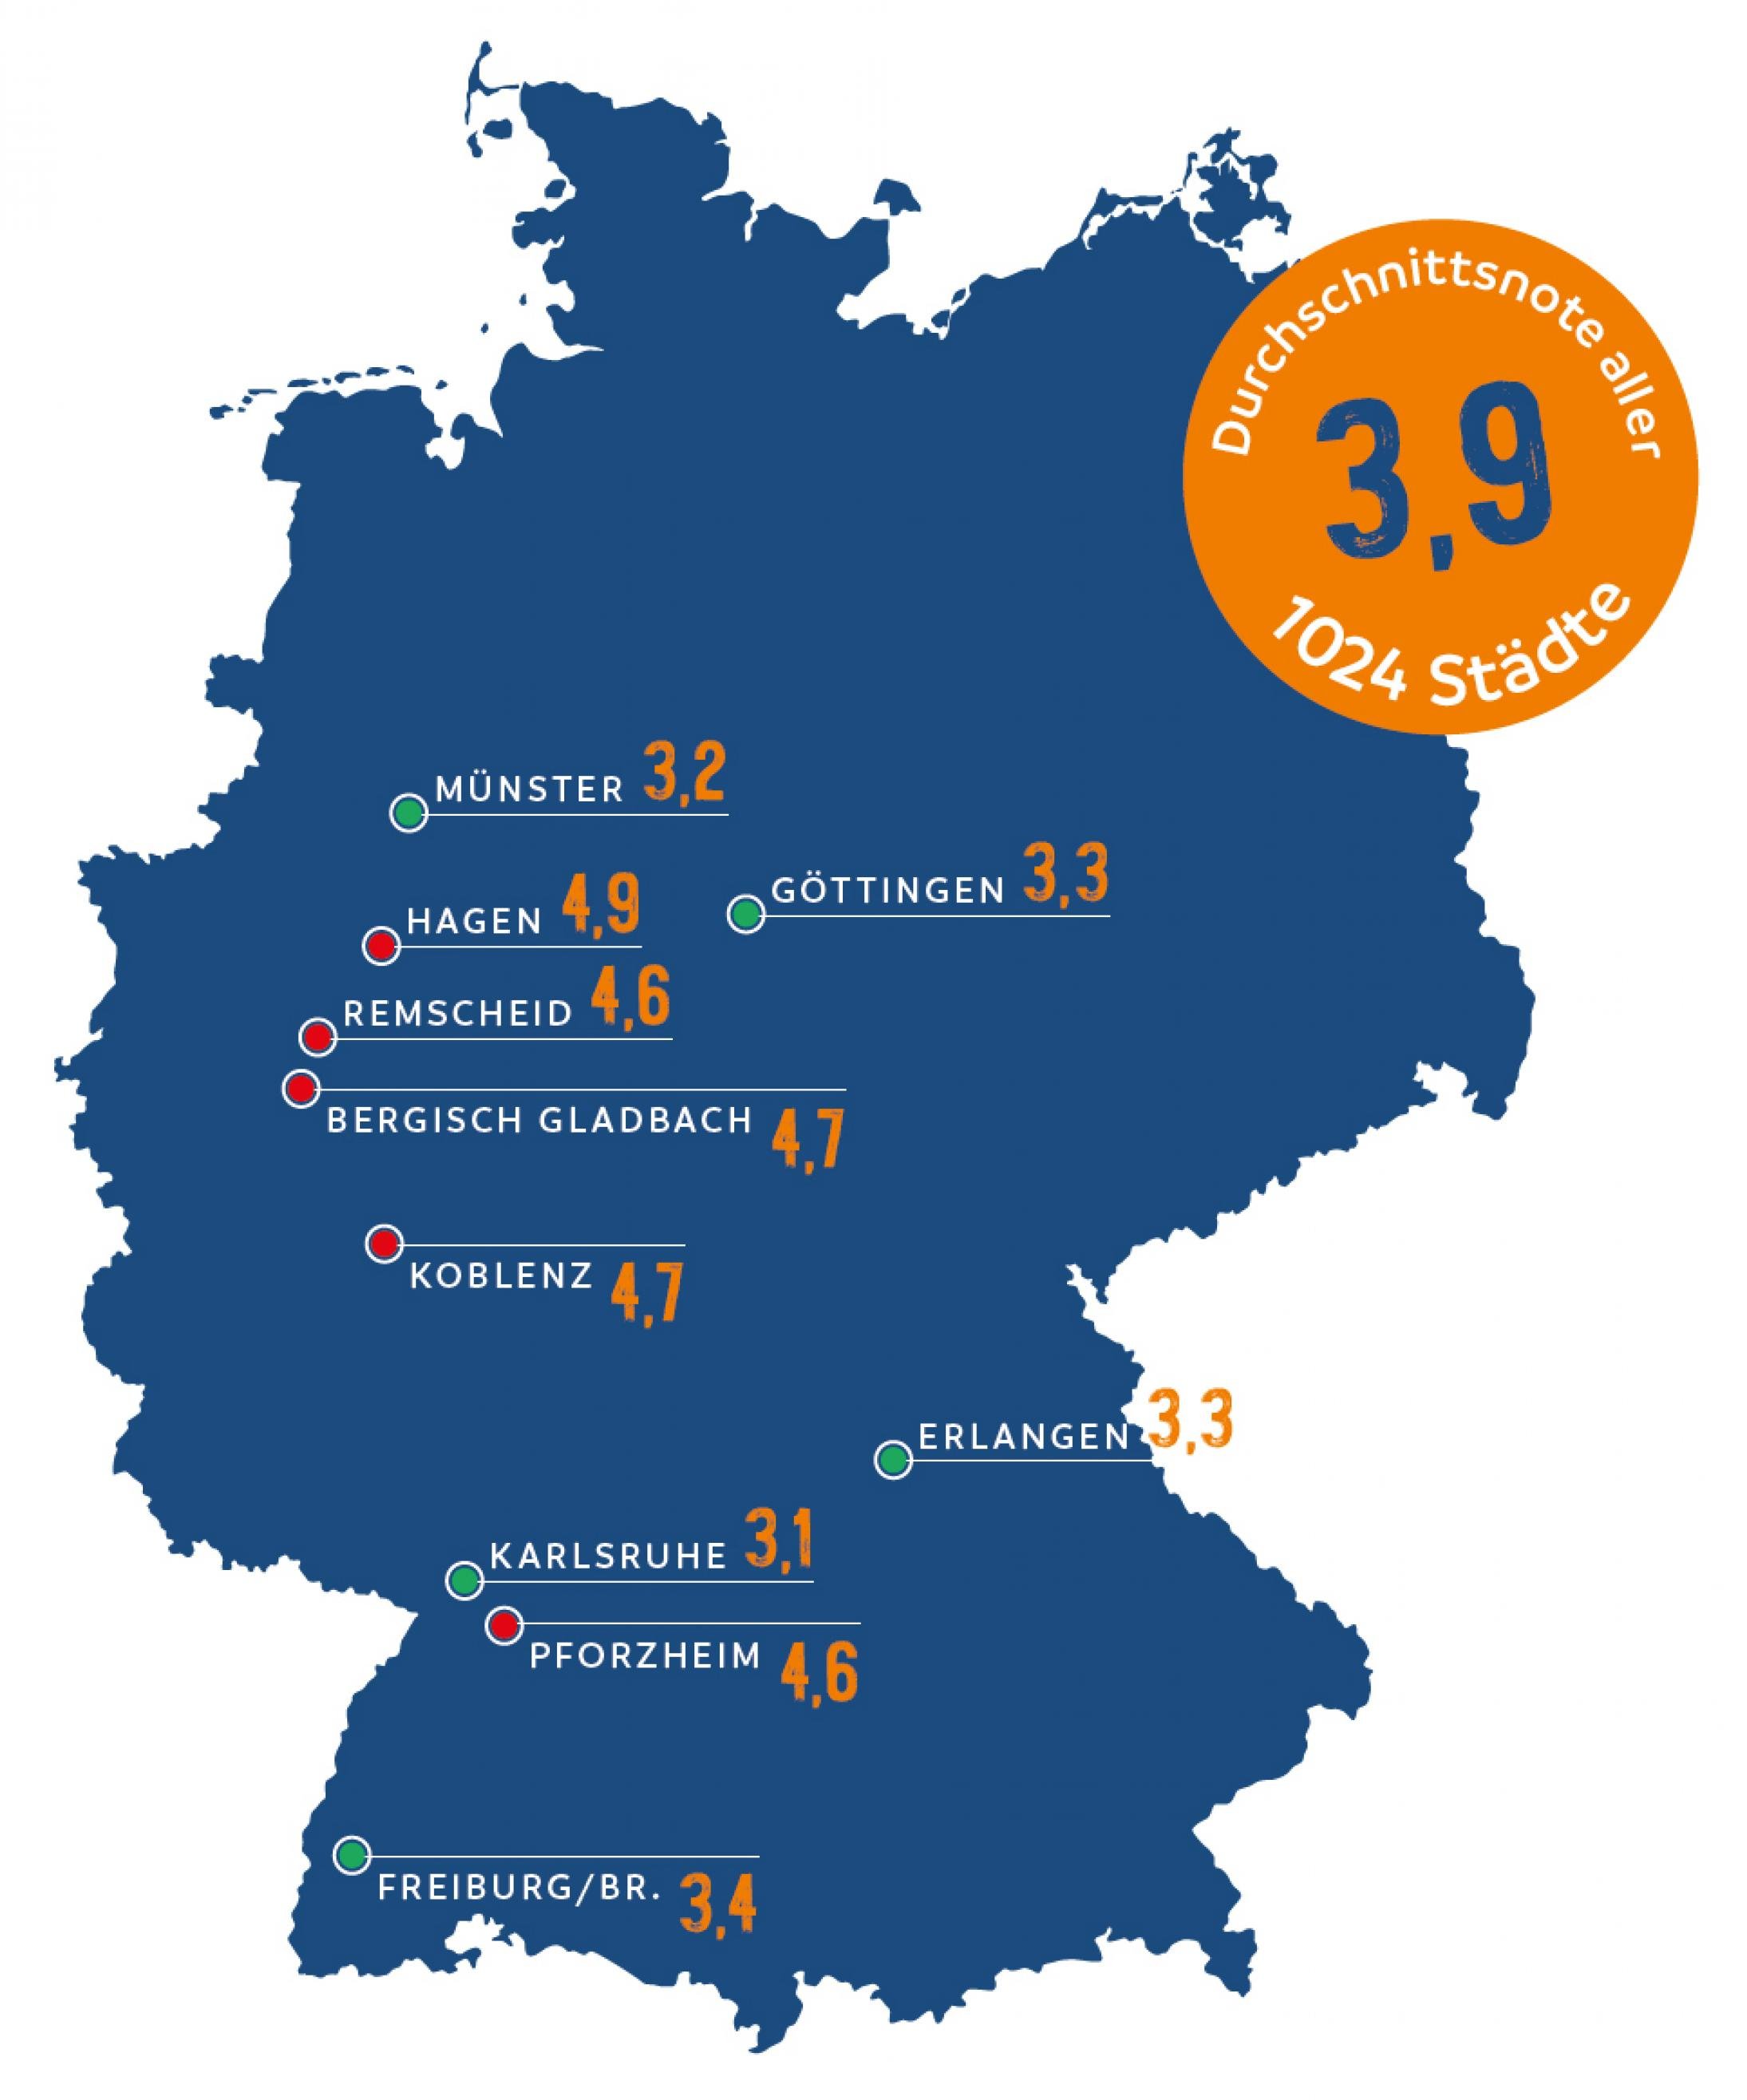 Auf der Deutschlandkarte haben Karlsruhe, Münster, Erlangen, Göttingen, Freiburg die besten Noten (knapp über 3). Die schlechtesten Noten besitzen Pforzheim, Remscheid, Bergisch Gladbach, Koblenz, Hagen, jeweils unter 4.